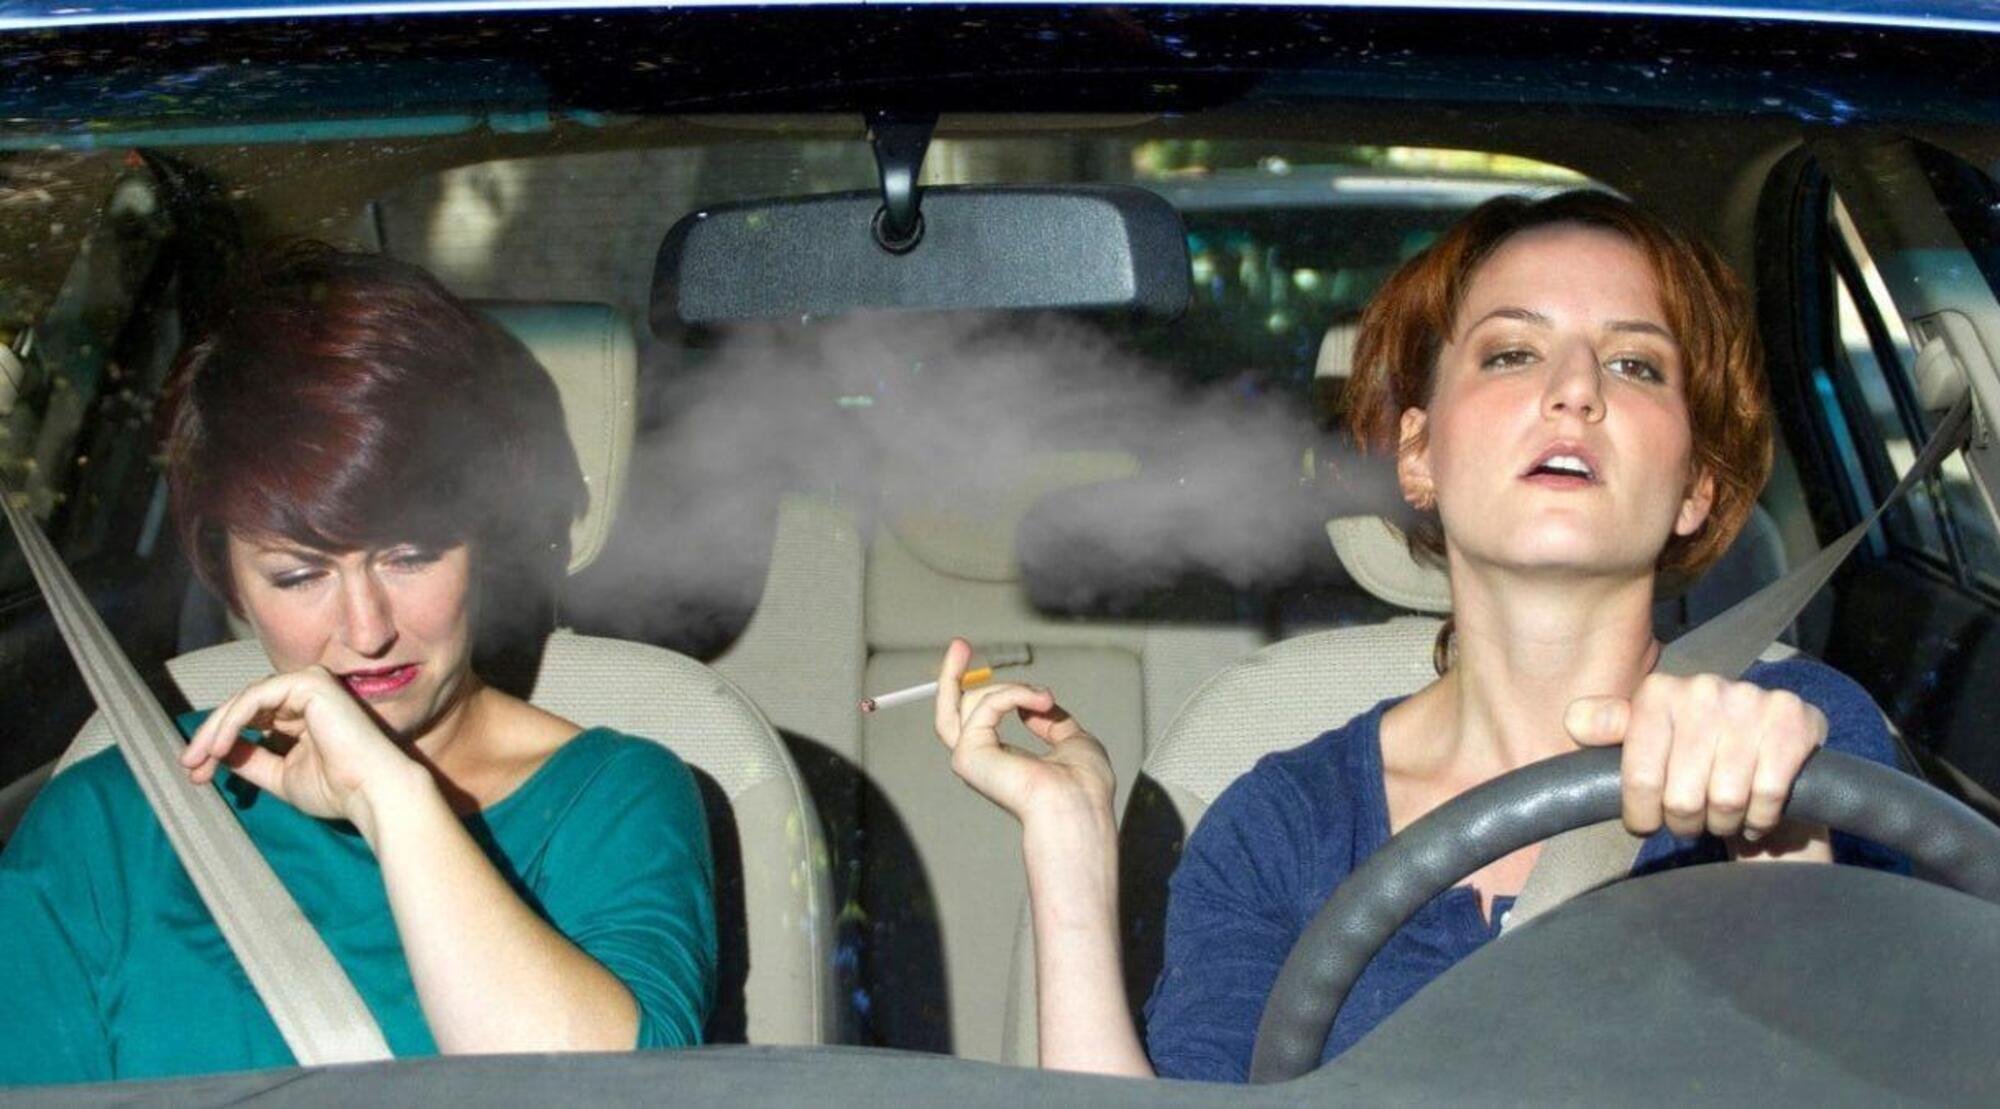 Basta fumo di sigarette in auto (e fuori): Milano capofila delle limitazioni 